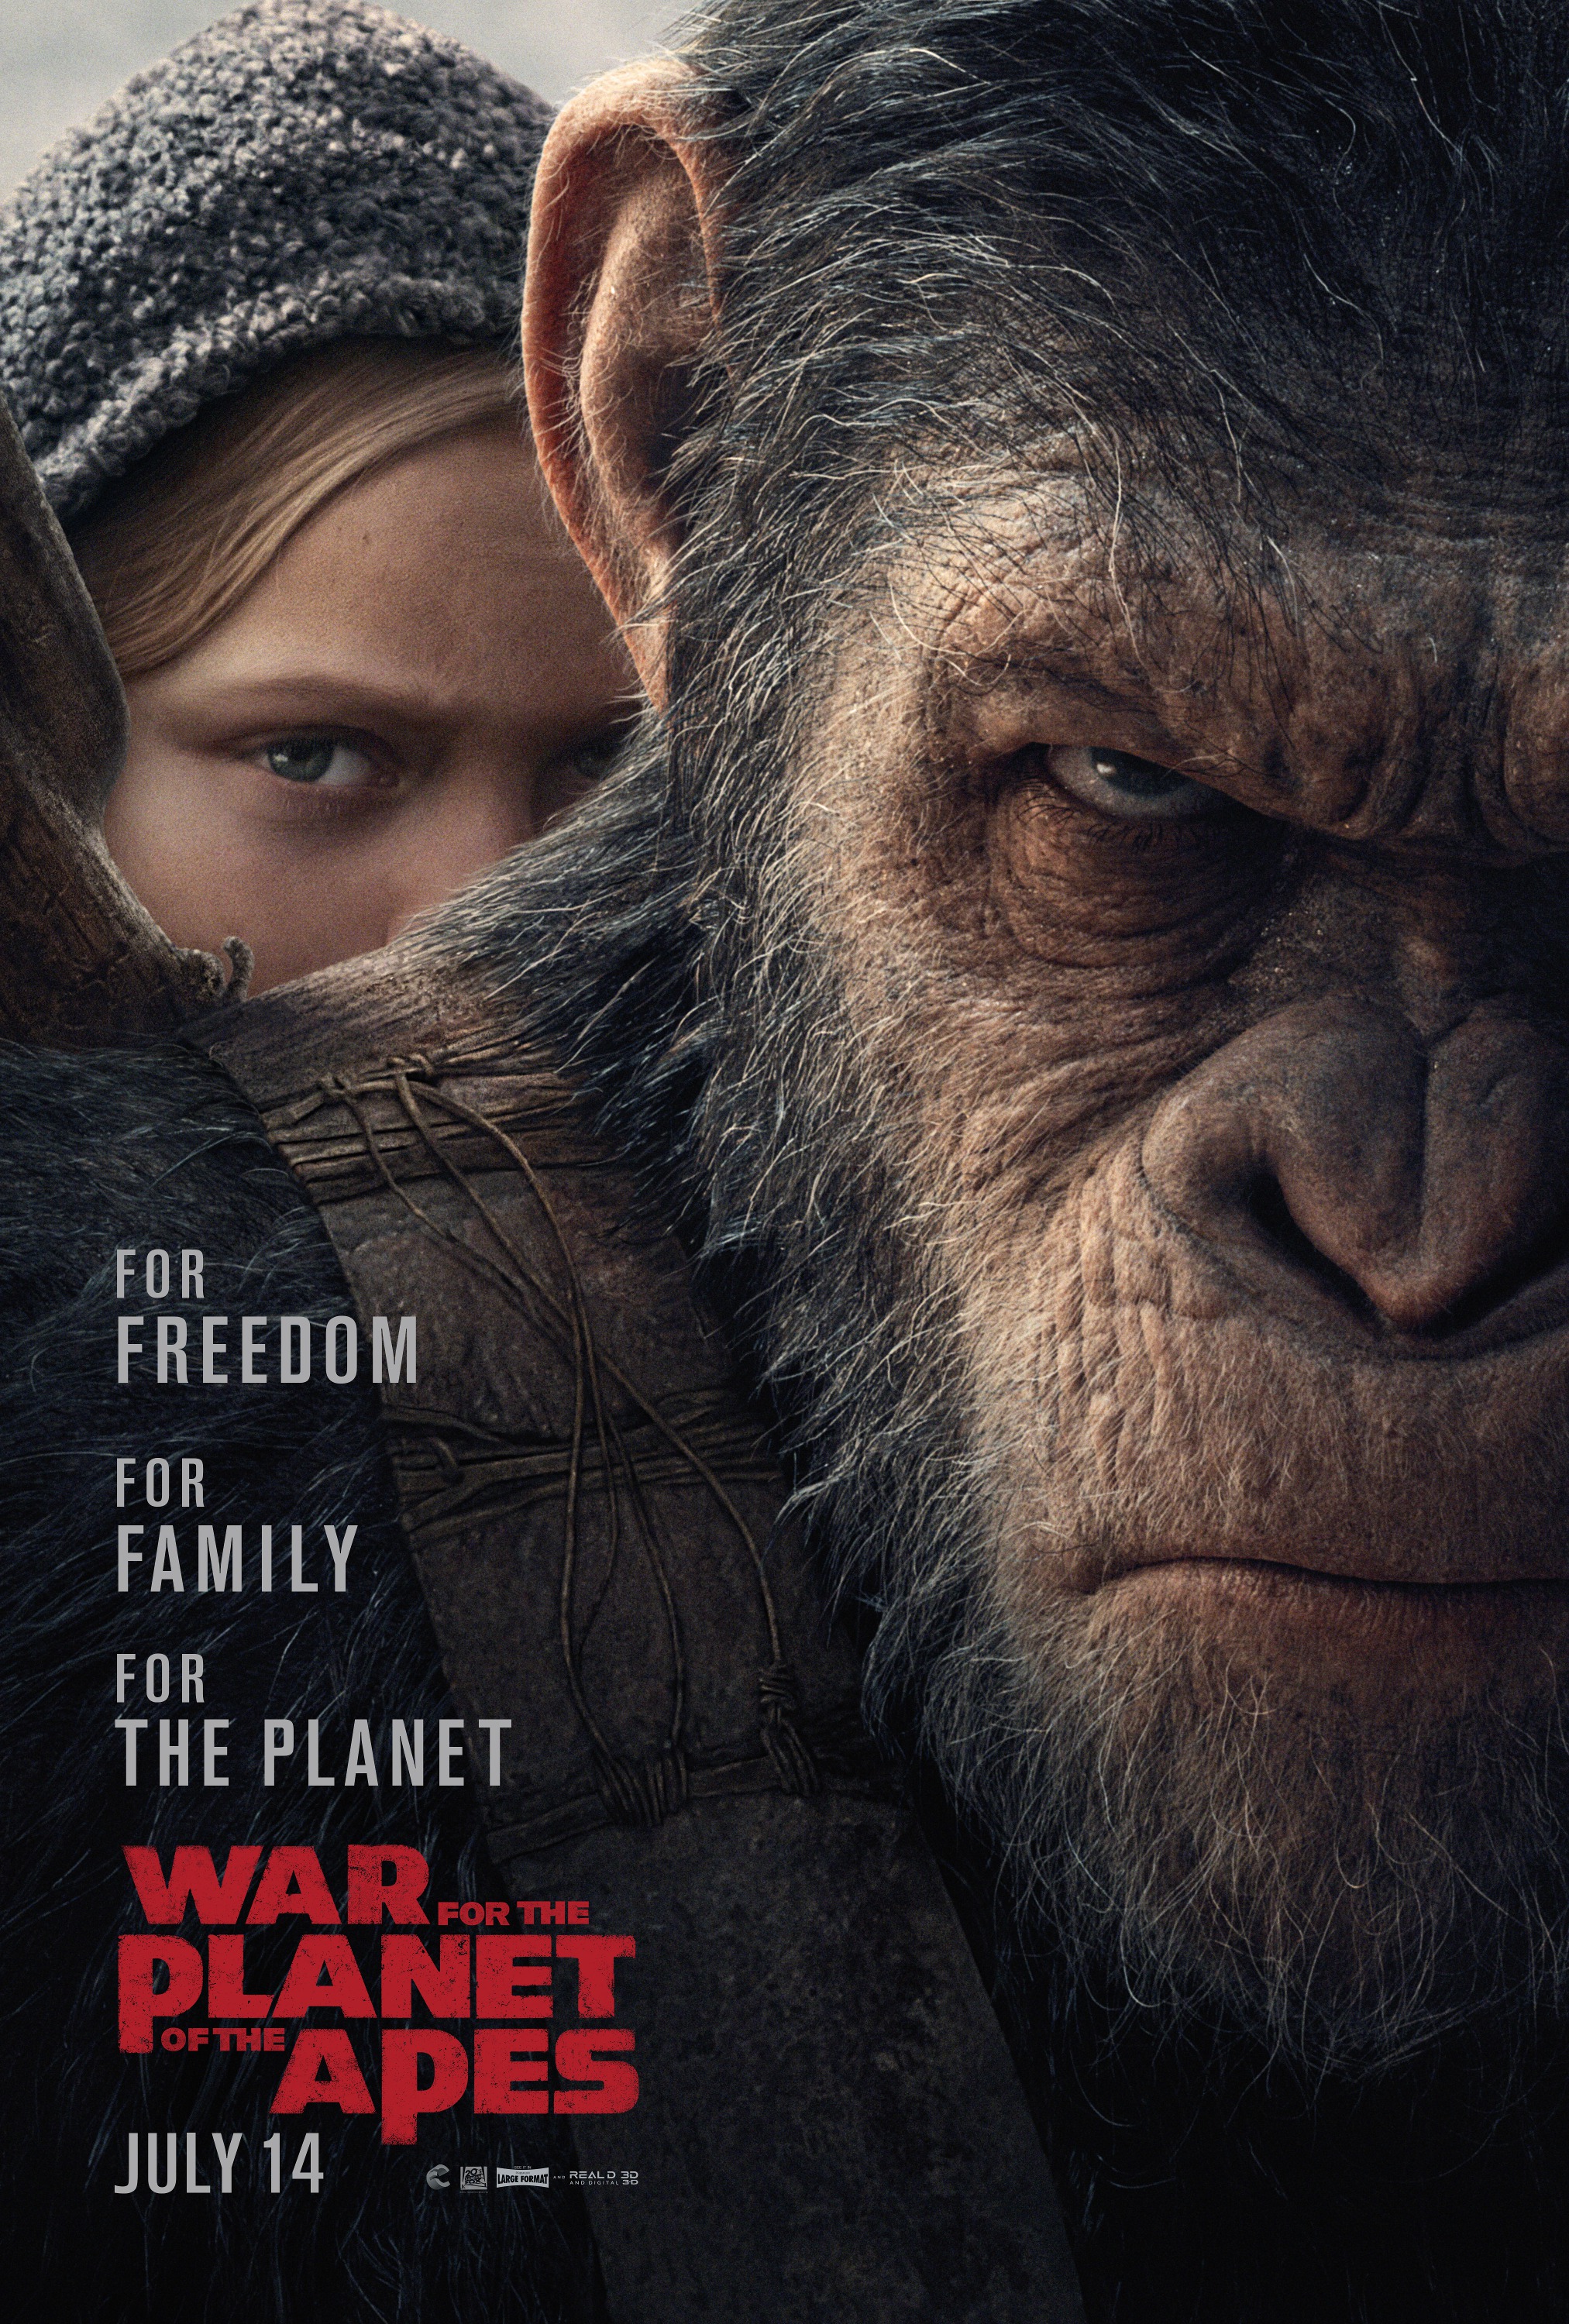 ПРЕМЬЕРА! Смотрим зрелищный трейлер «Войны планеты обезьян»